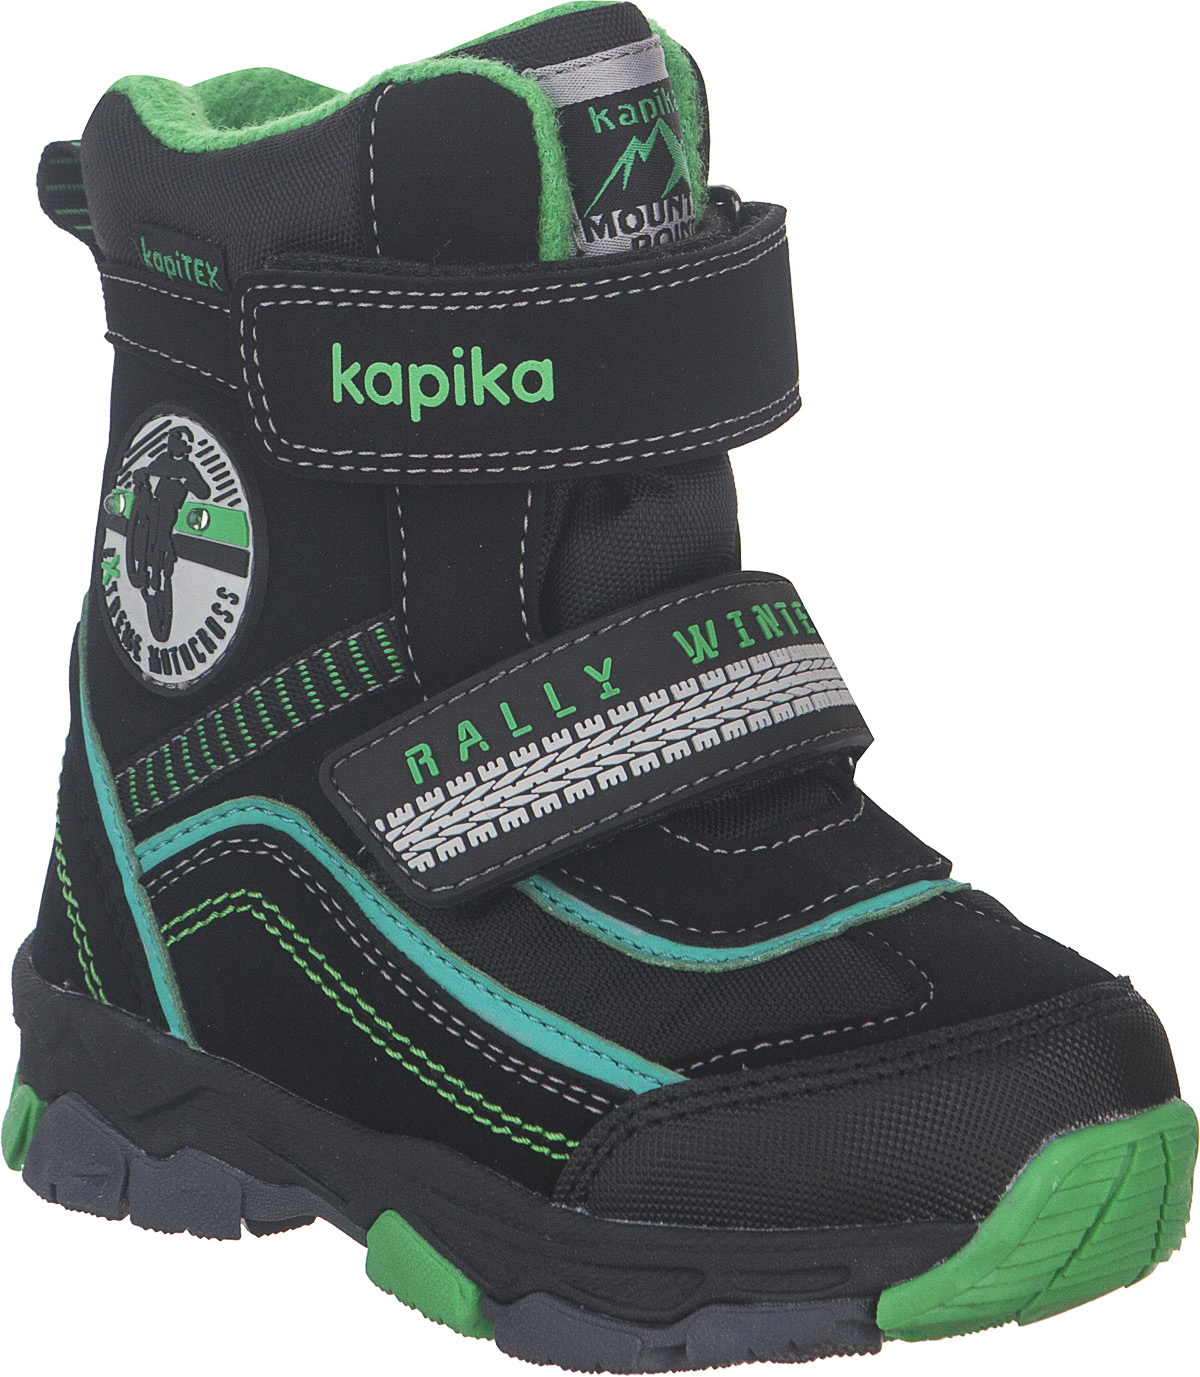 Ботинки для мальчика Kapika KapiTEX, цвет: черный, зеленый. 41230-1. Размер 23